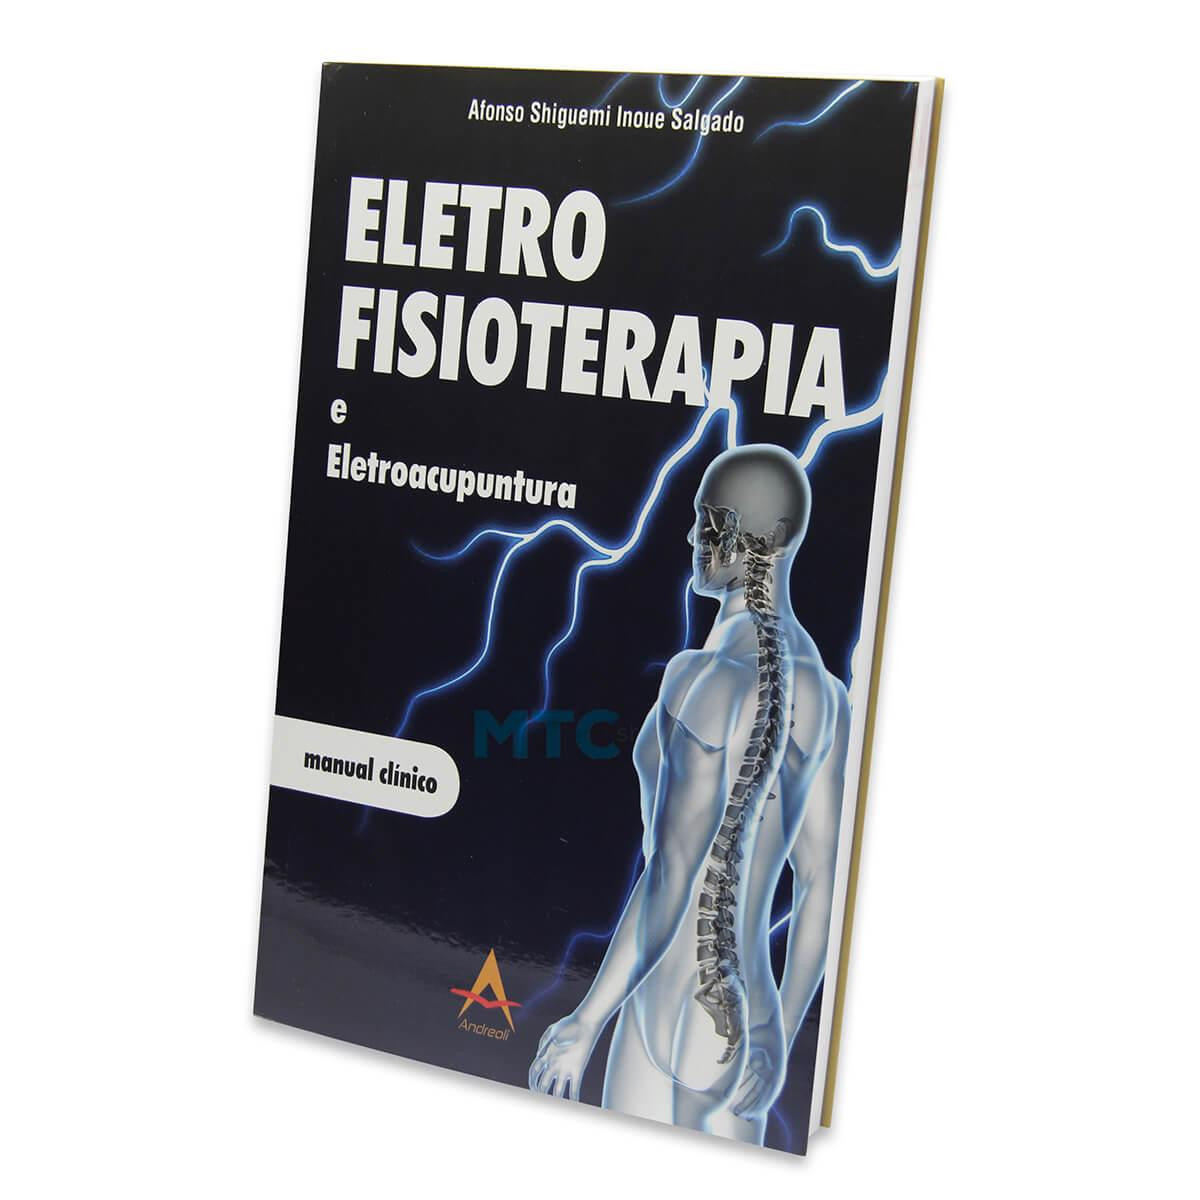 Eletrofisioterapia e Eletroacupuntura - Manual Clínico - Ed Andreoli